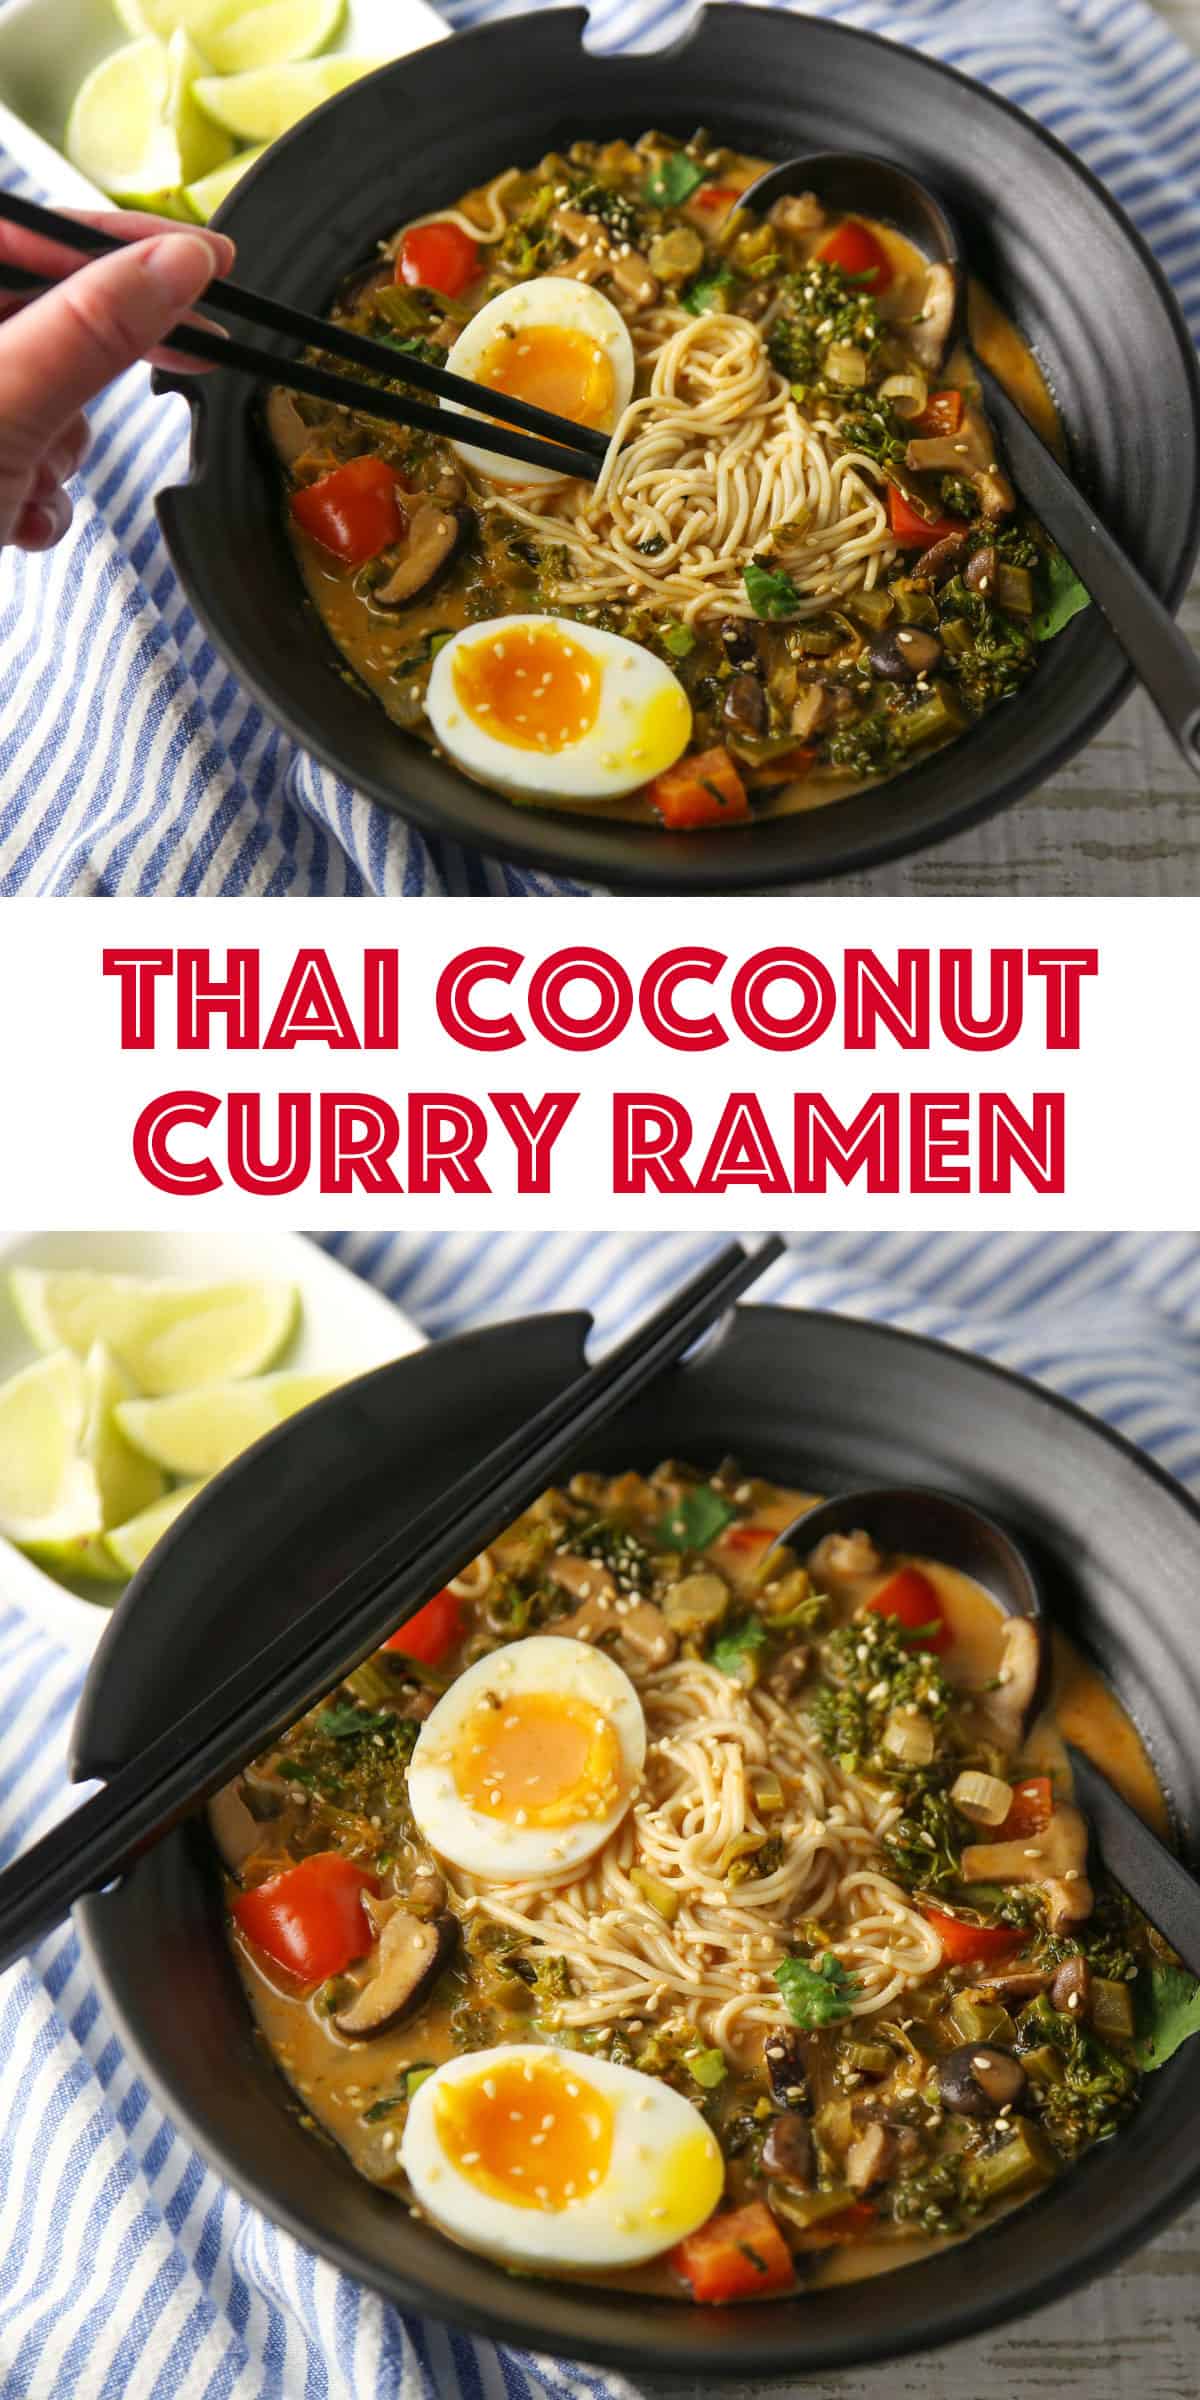 Thai coconut curry ramen